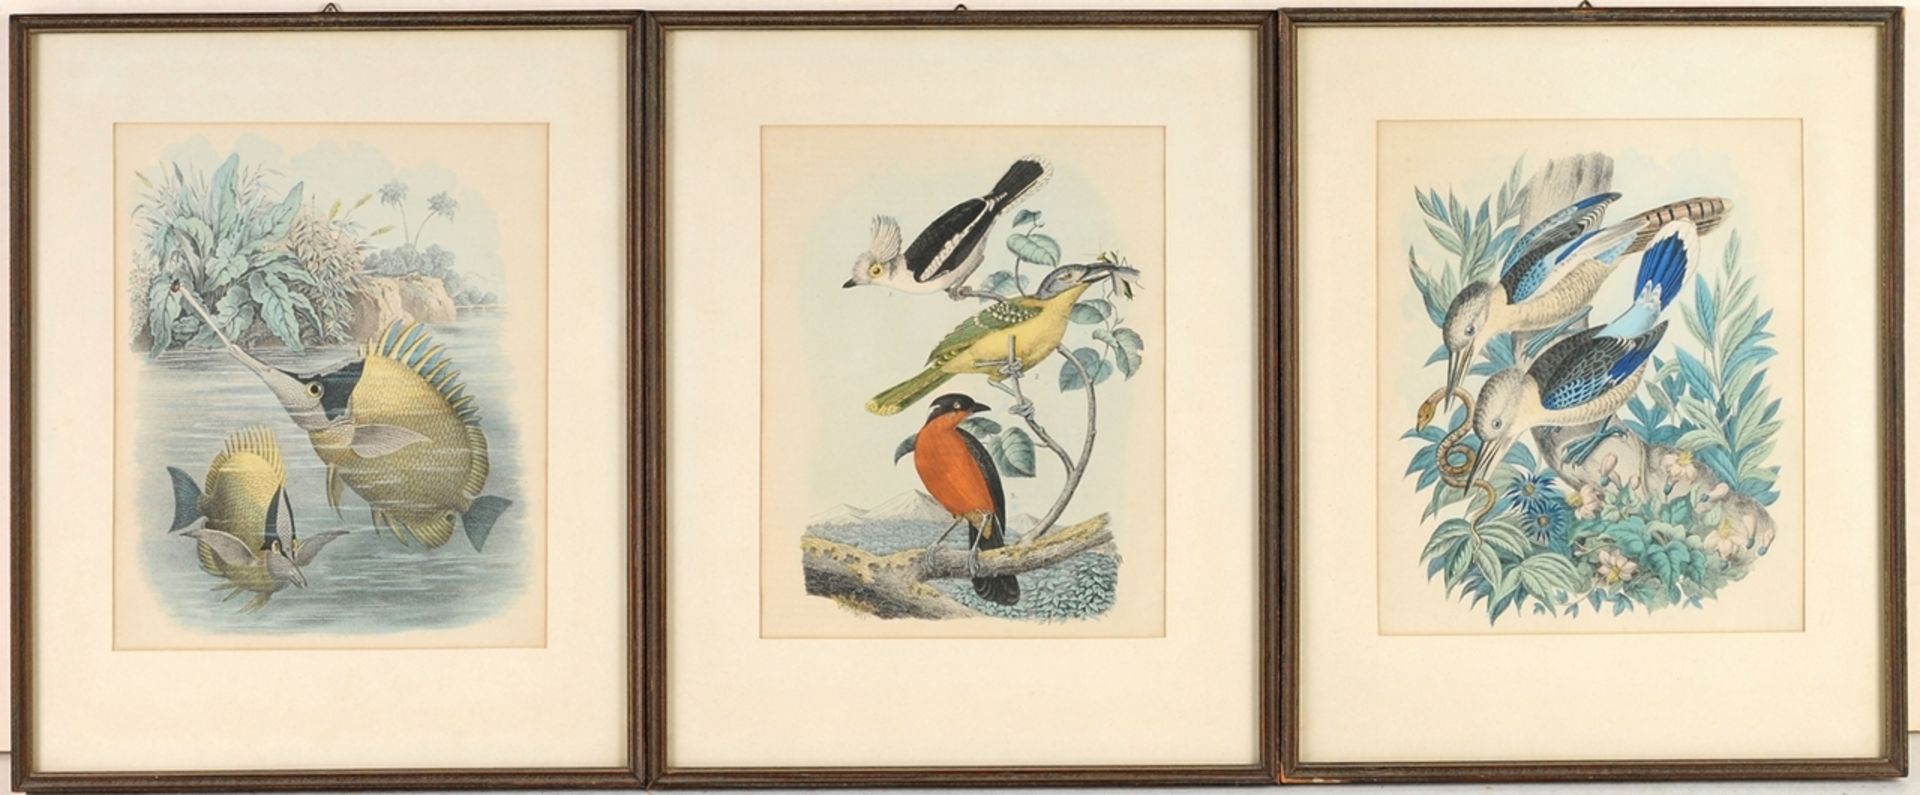 Unbekannt3 Bll. Farblithographien. Vögel und Fische. 19. Jh. Je 21,5 x 18 cm (Passepartoutau